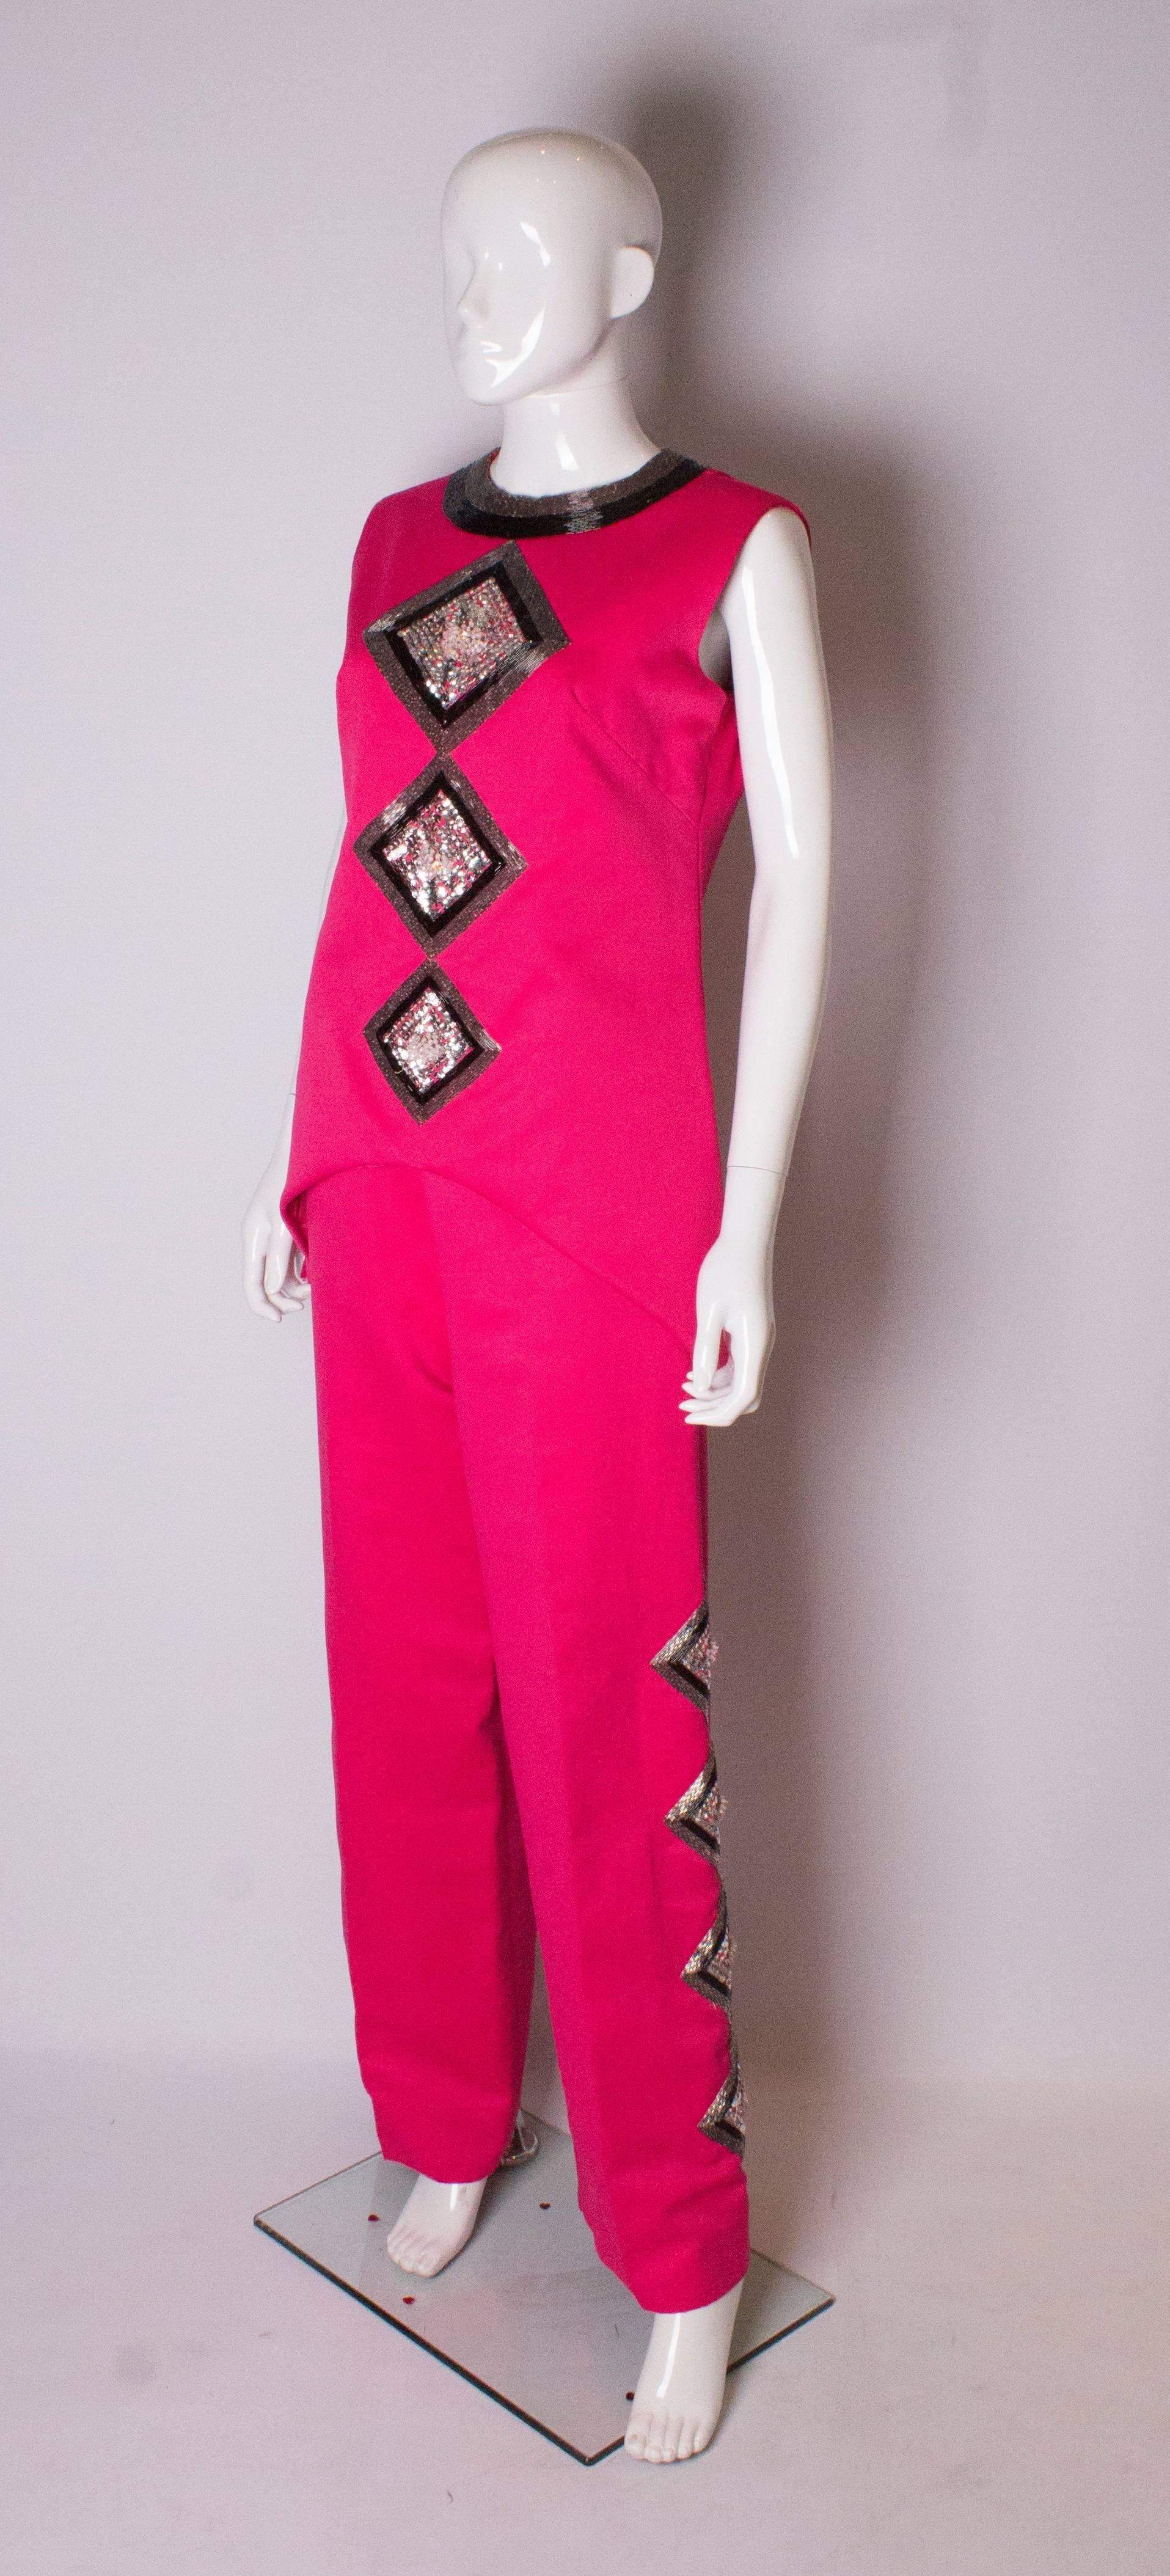 Ein schicker rosa Hosenanzug im Vintage-Stil von Valentina, Nummer RN34438. Das Oberteil hat einen runden Ausschnitt mit Perlen, ist ärmellos und hat einen 10'' Schlitz auf jeder Seite. Es hat eine wunderschöne Perlen- und Paillettenverzierung auf